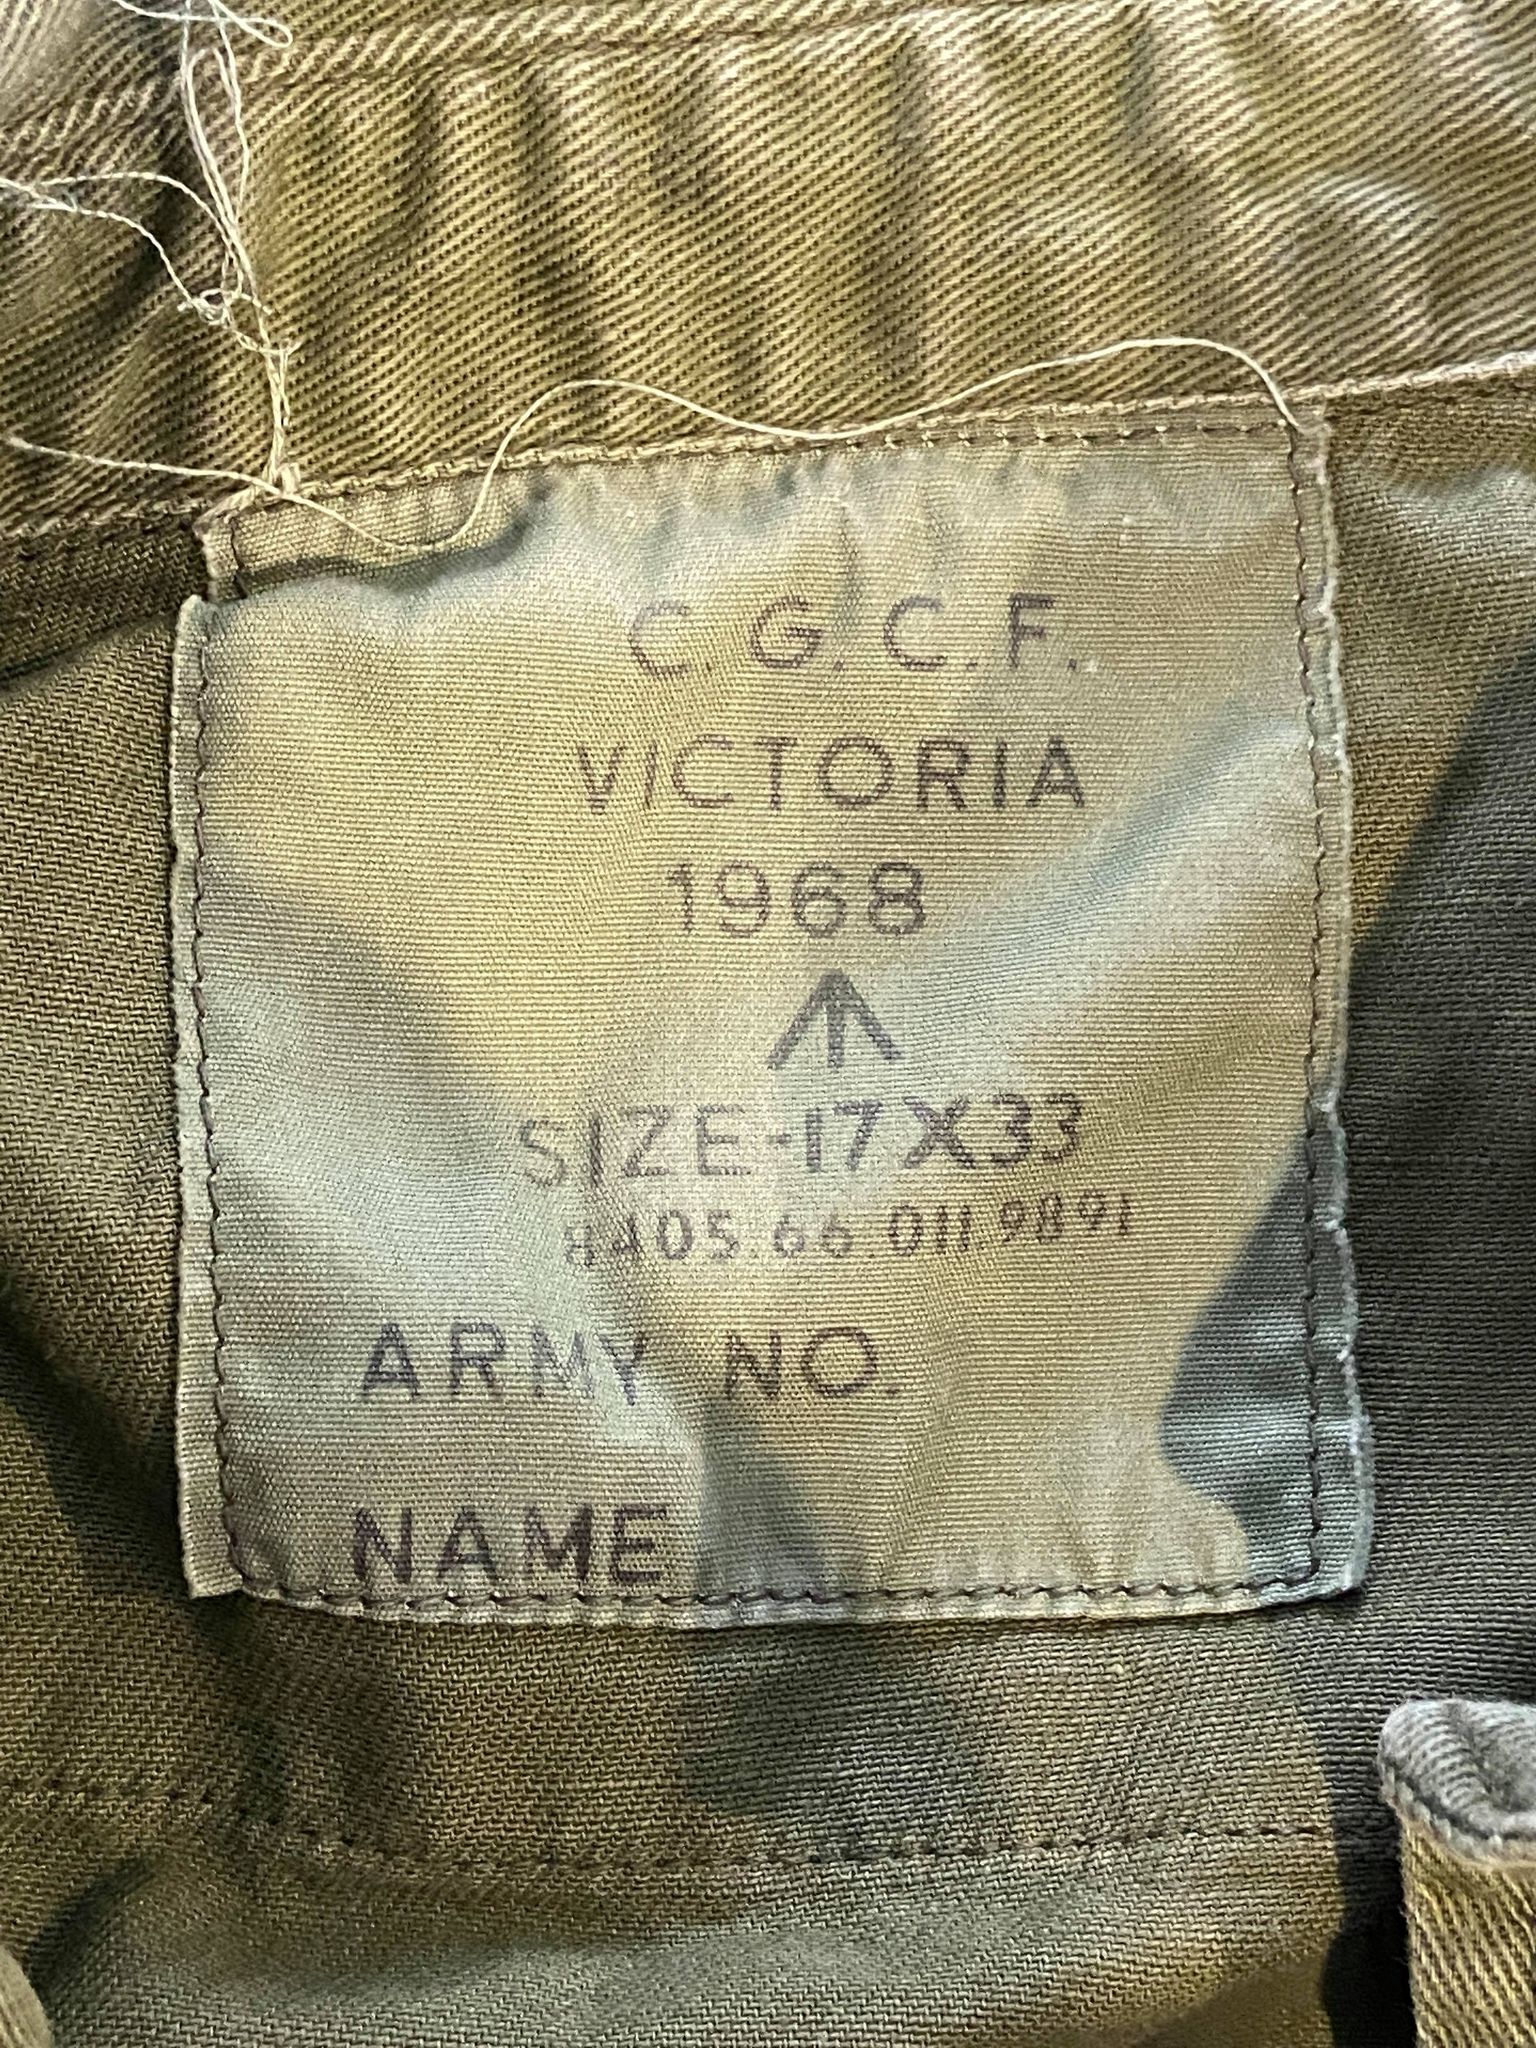 Australian Army Jungle Green Long Sleeve Shirt (Sergeant) - Vietnam War ...